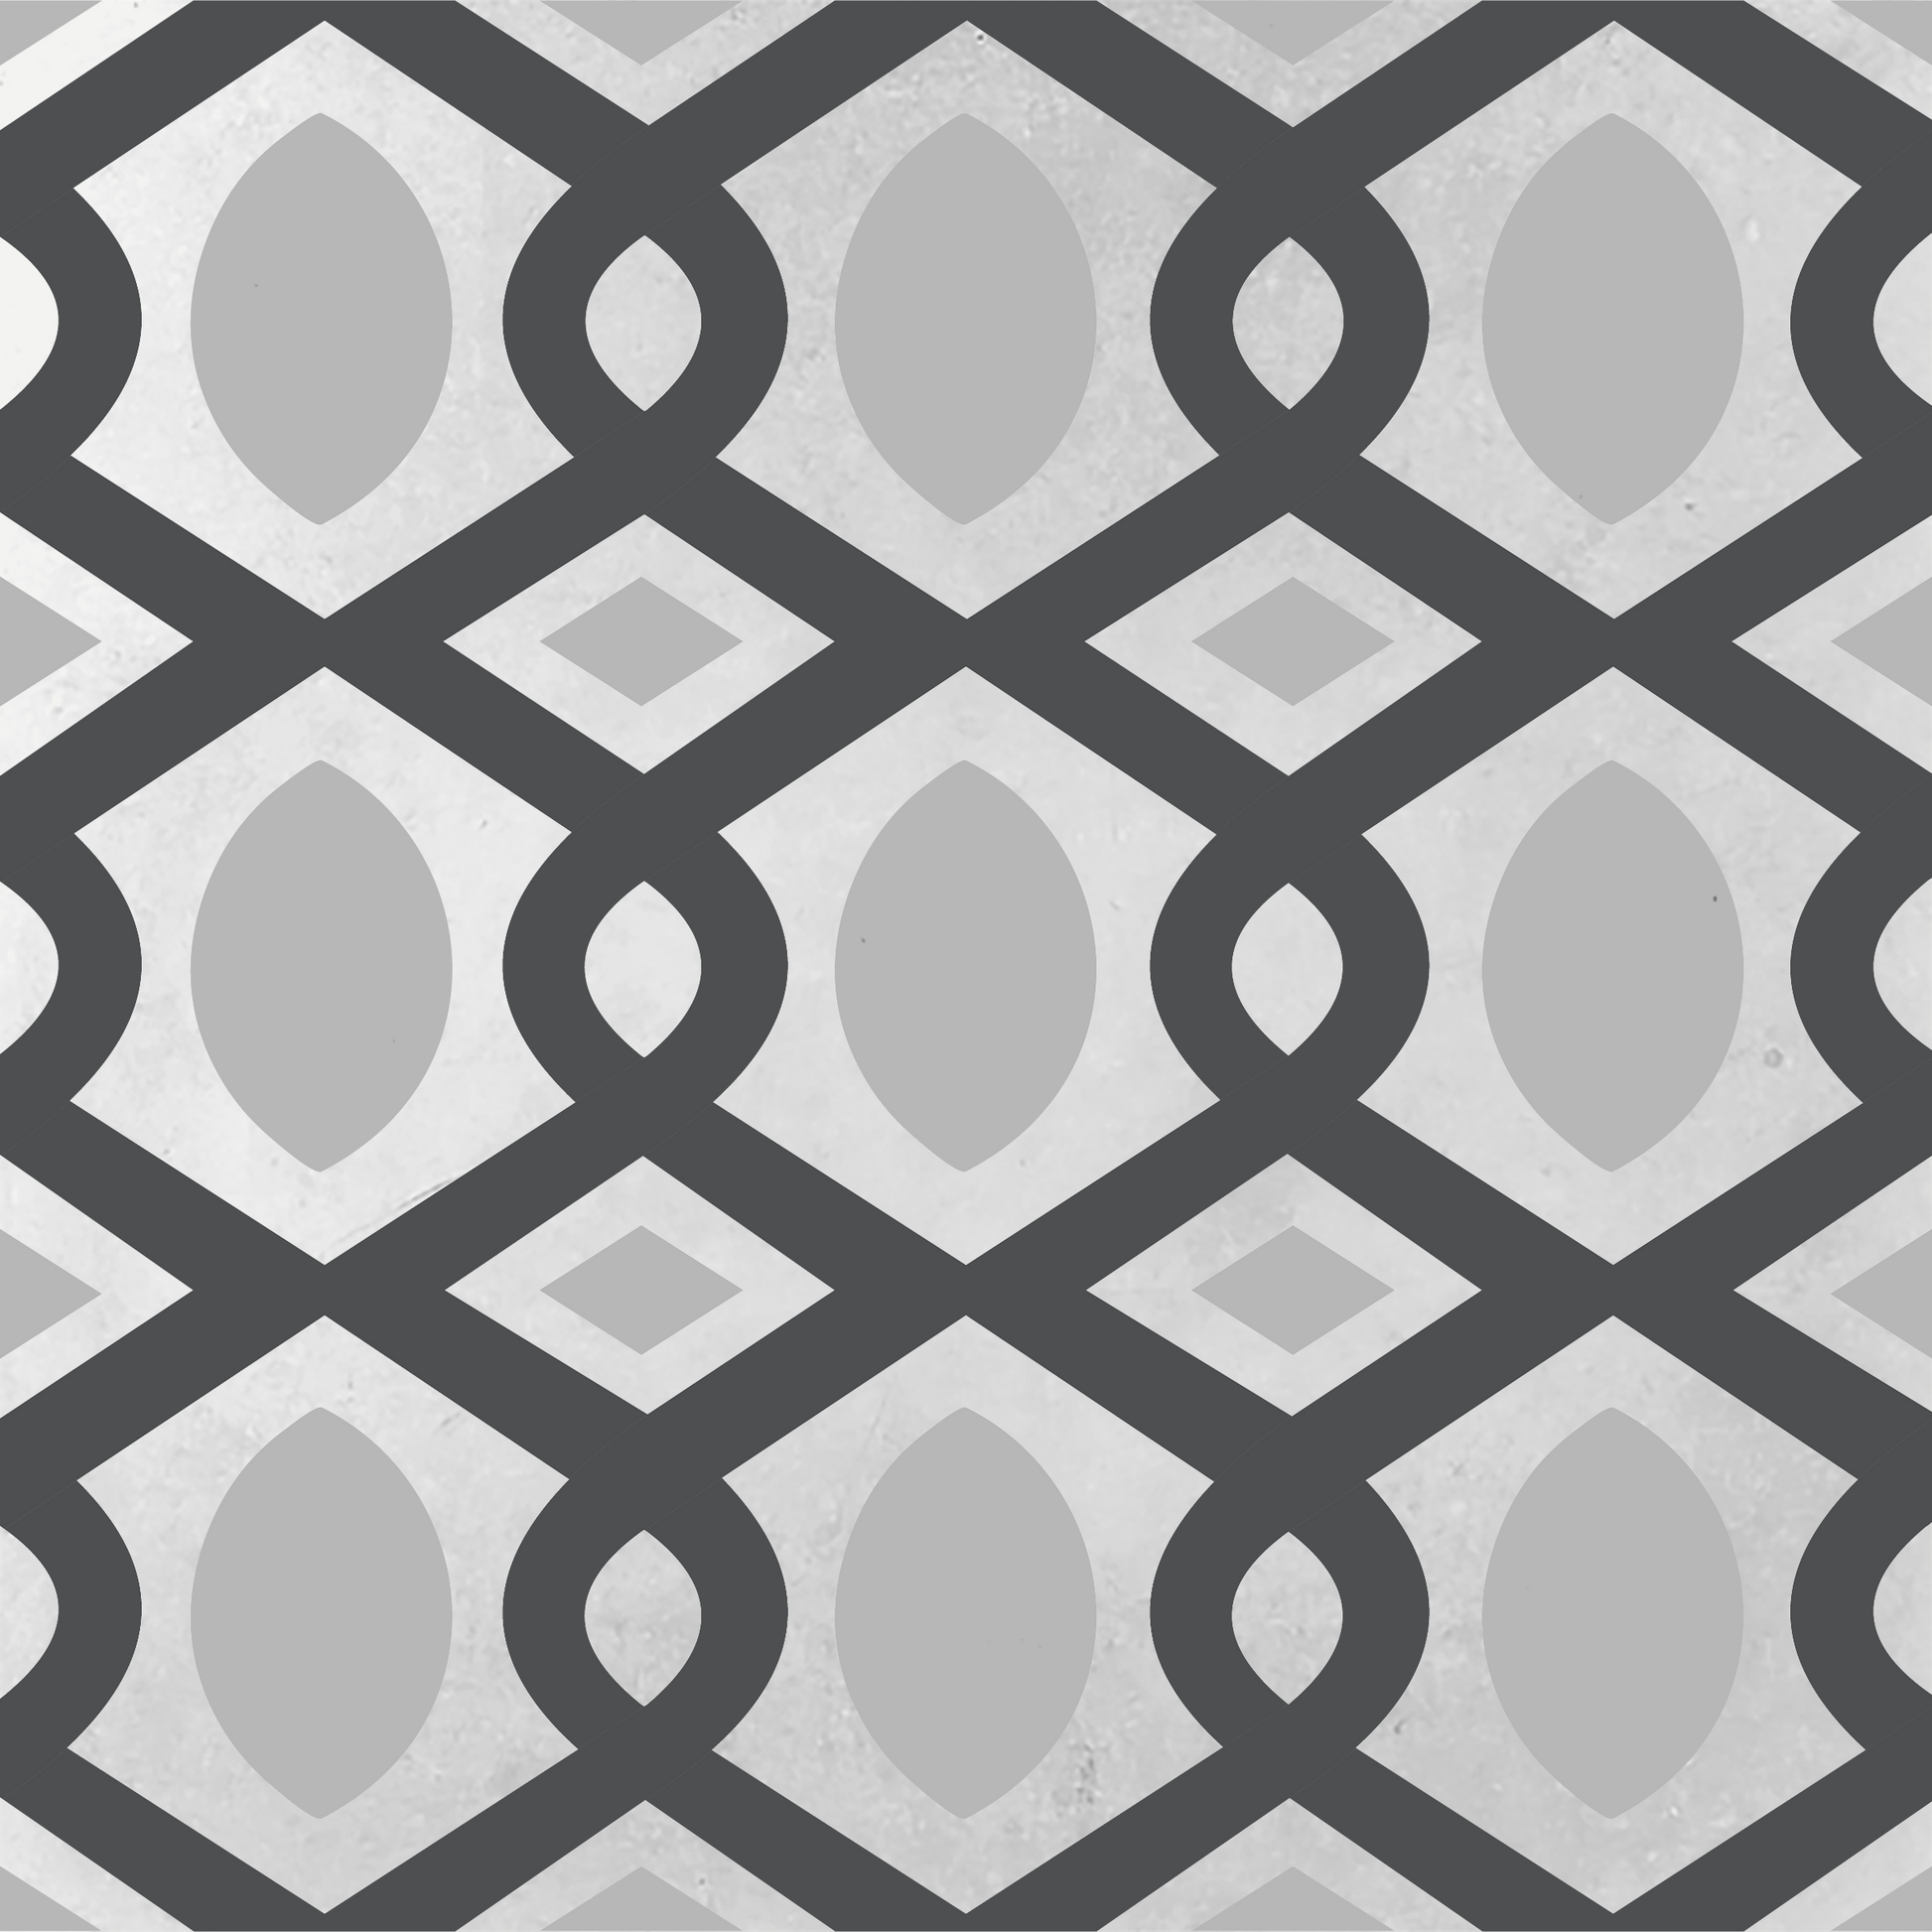 Cement Tile, Concrete Tile, Encaustic Tile, Modern Pattern